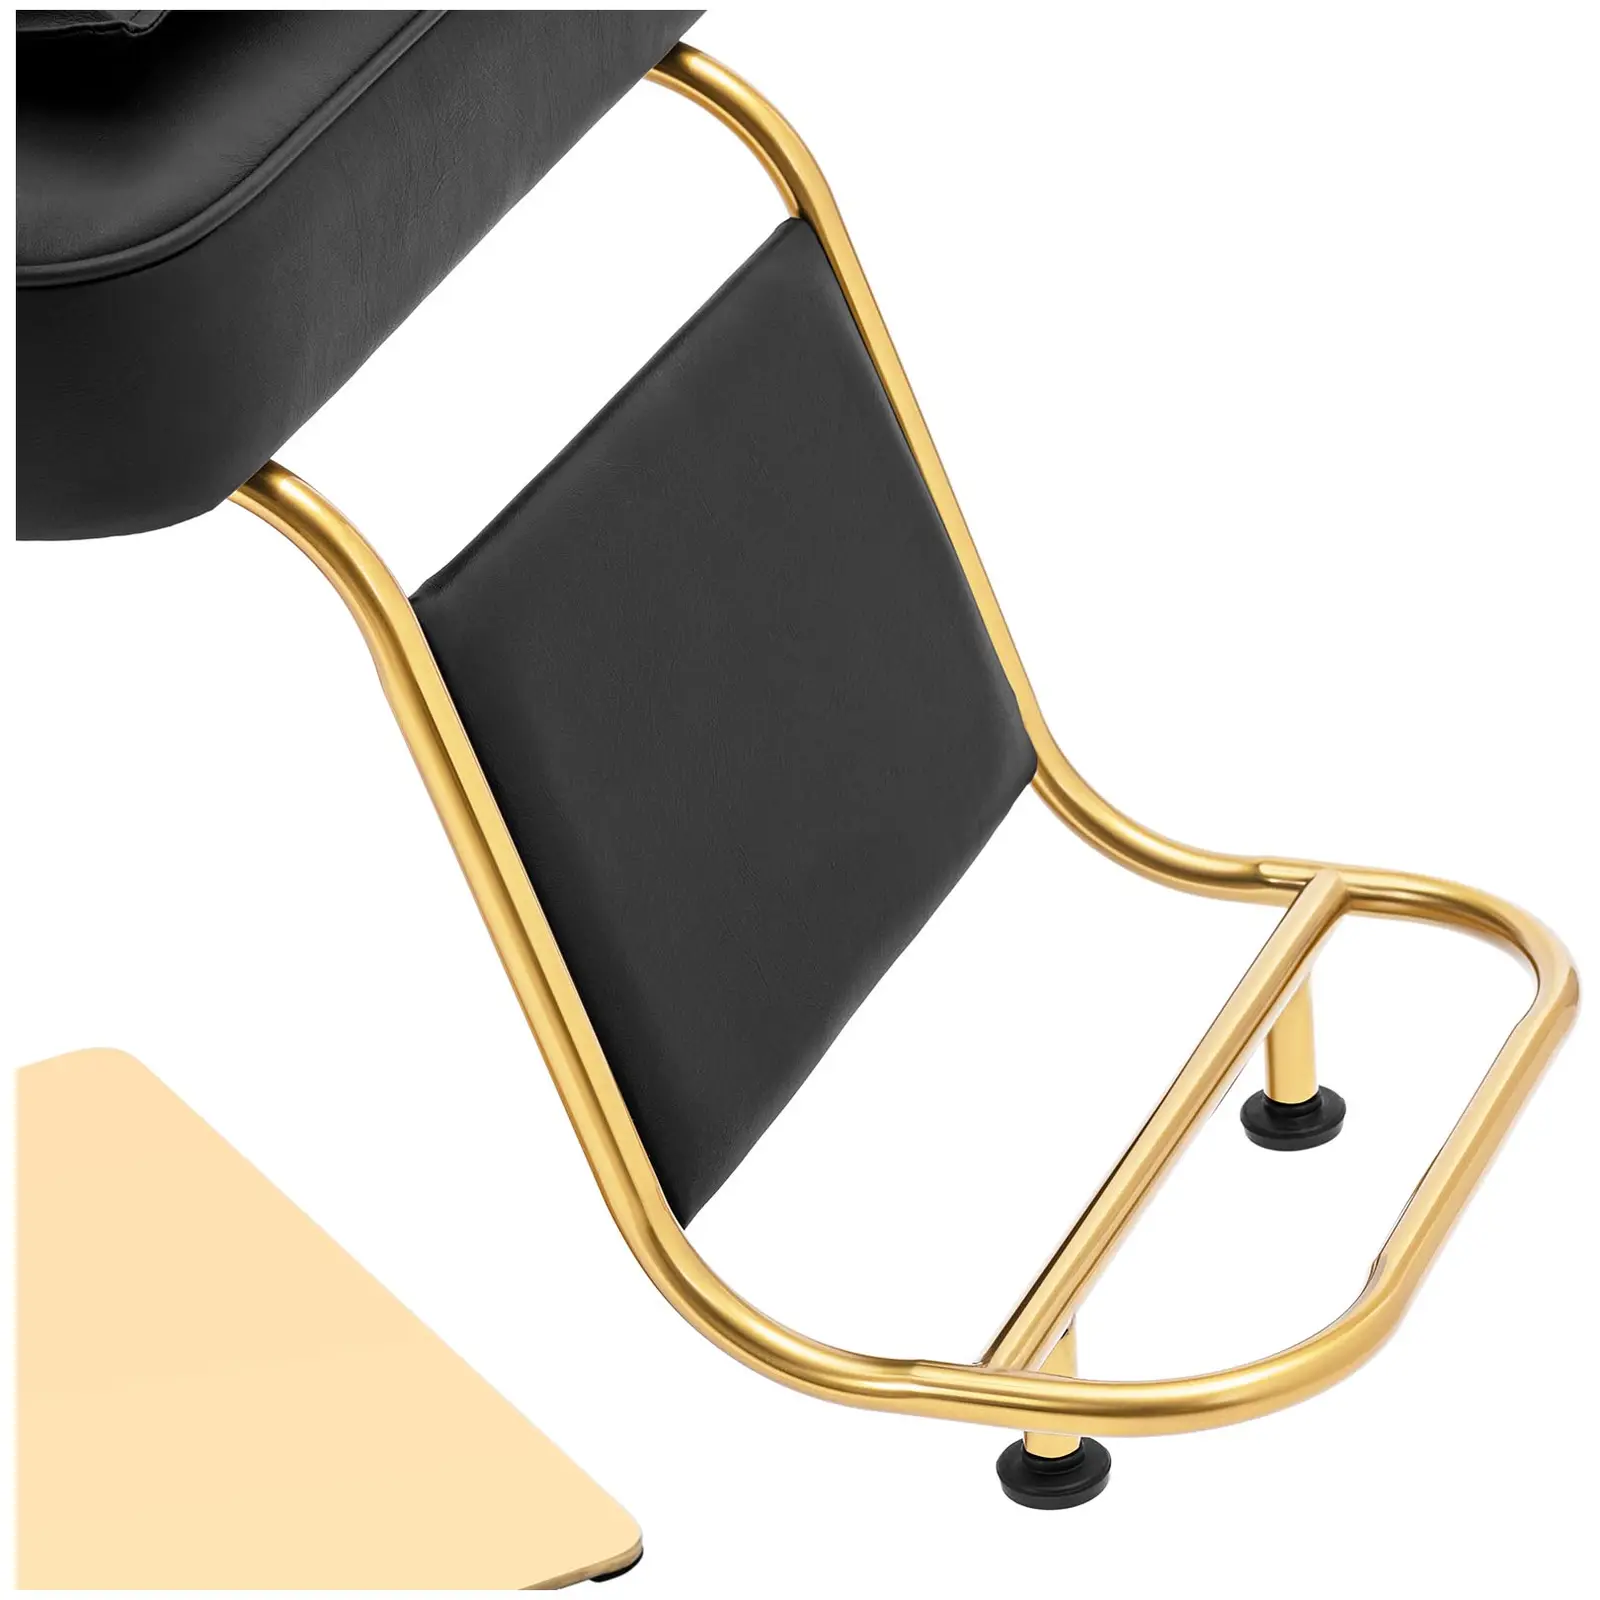 Καρέκλα σαλονιού με υποπόδιο - 890 - 1020 mm - 200 kg - μαύρο / χρυσό